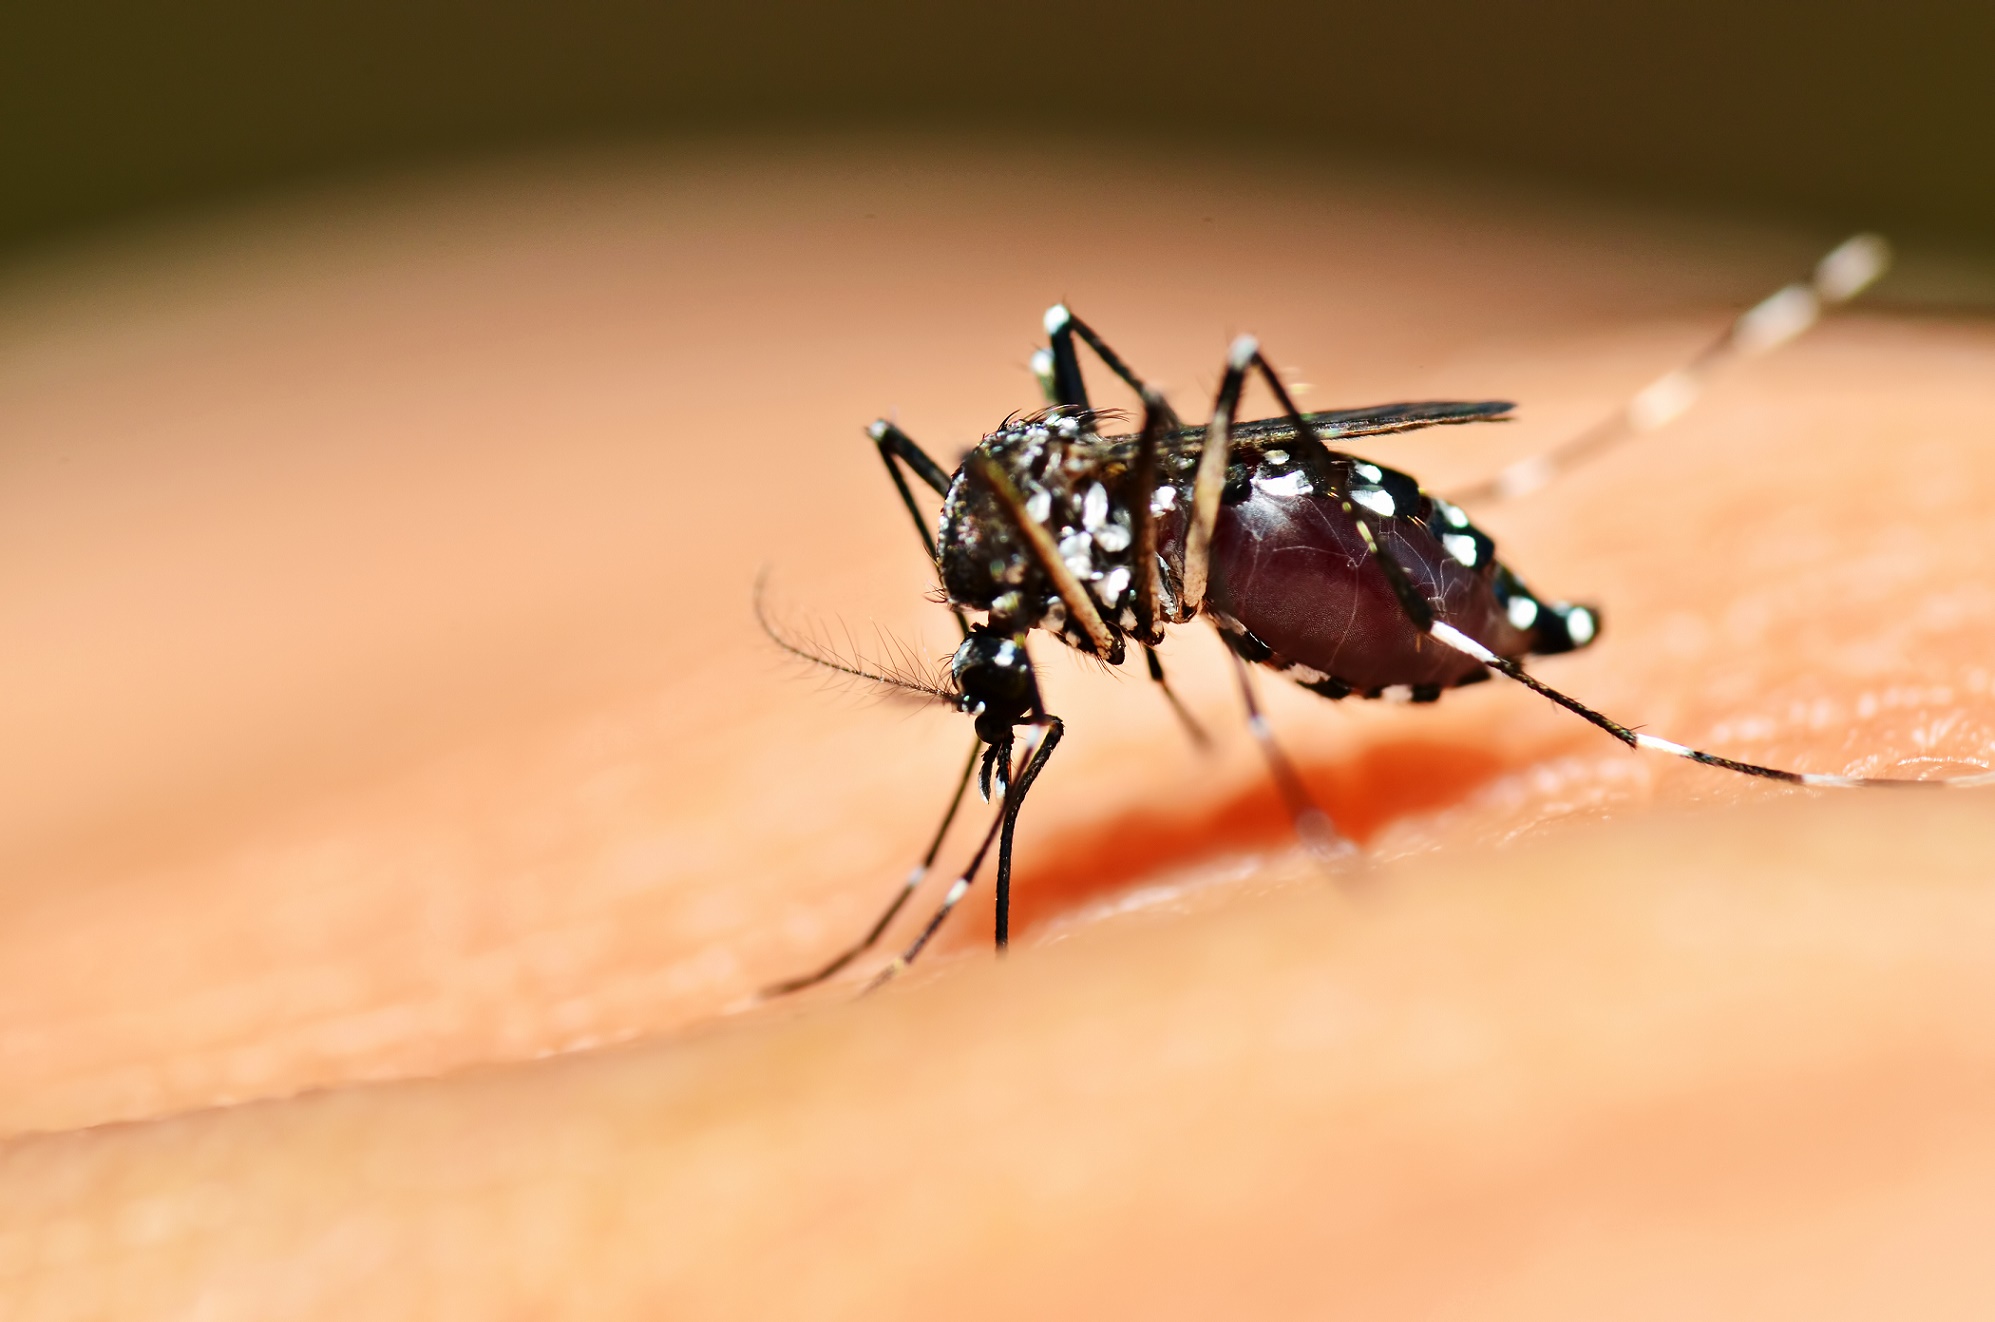 Les moustiques du genre Aedes transmettent des flavivirus. © mrfiza, Shutterstock